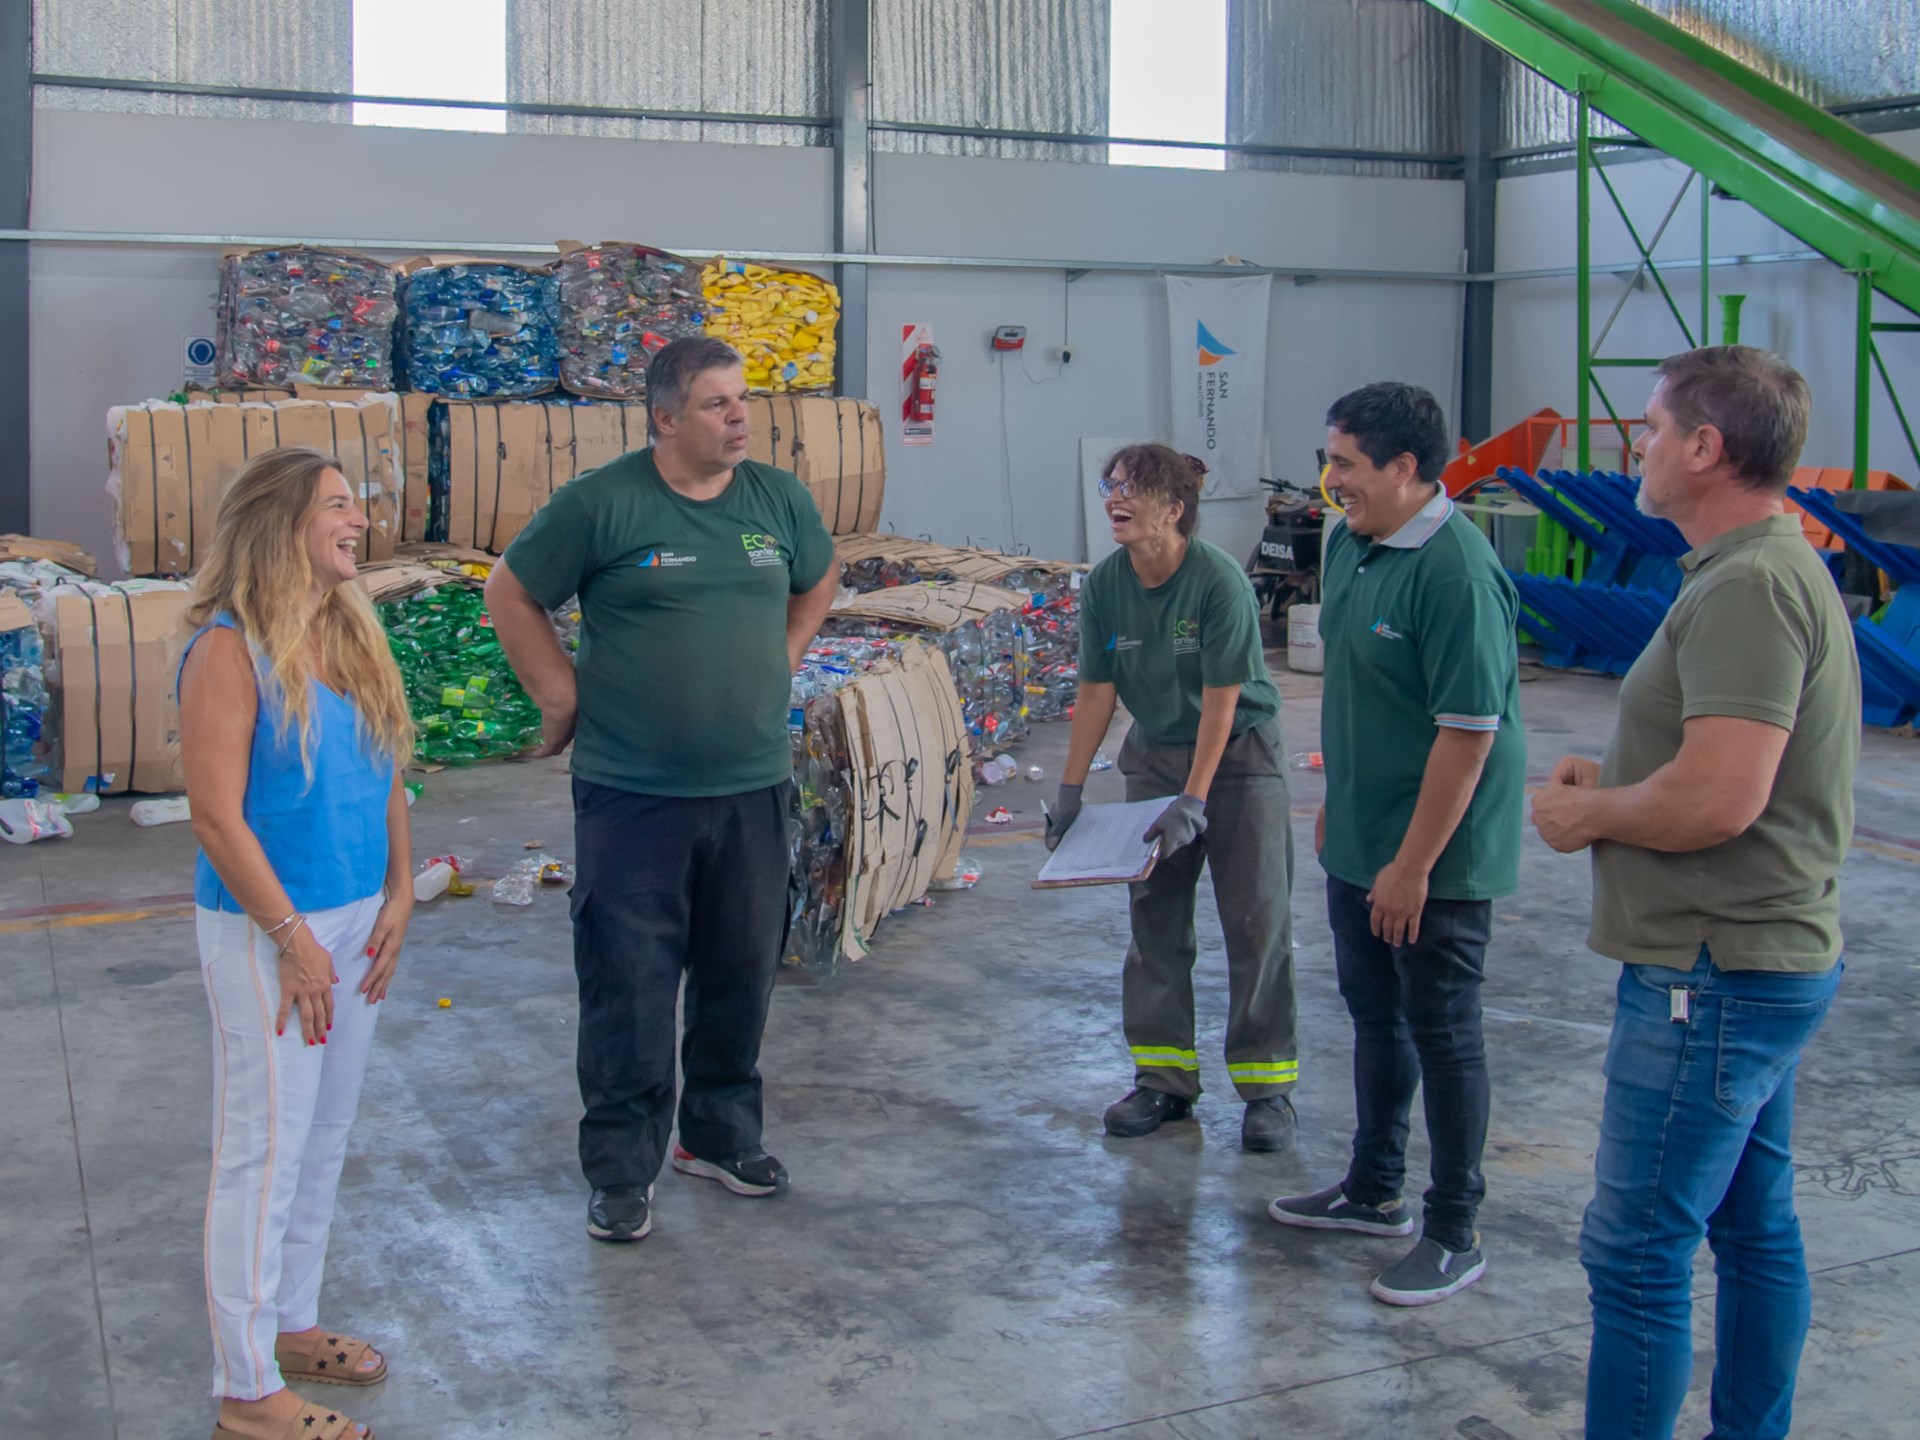 San Fernando continúa reciclando plásticos para mejorar la calidad de vida